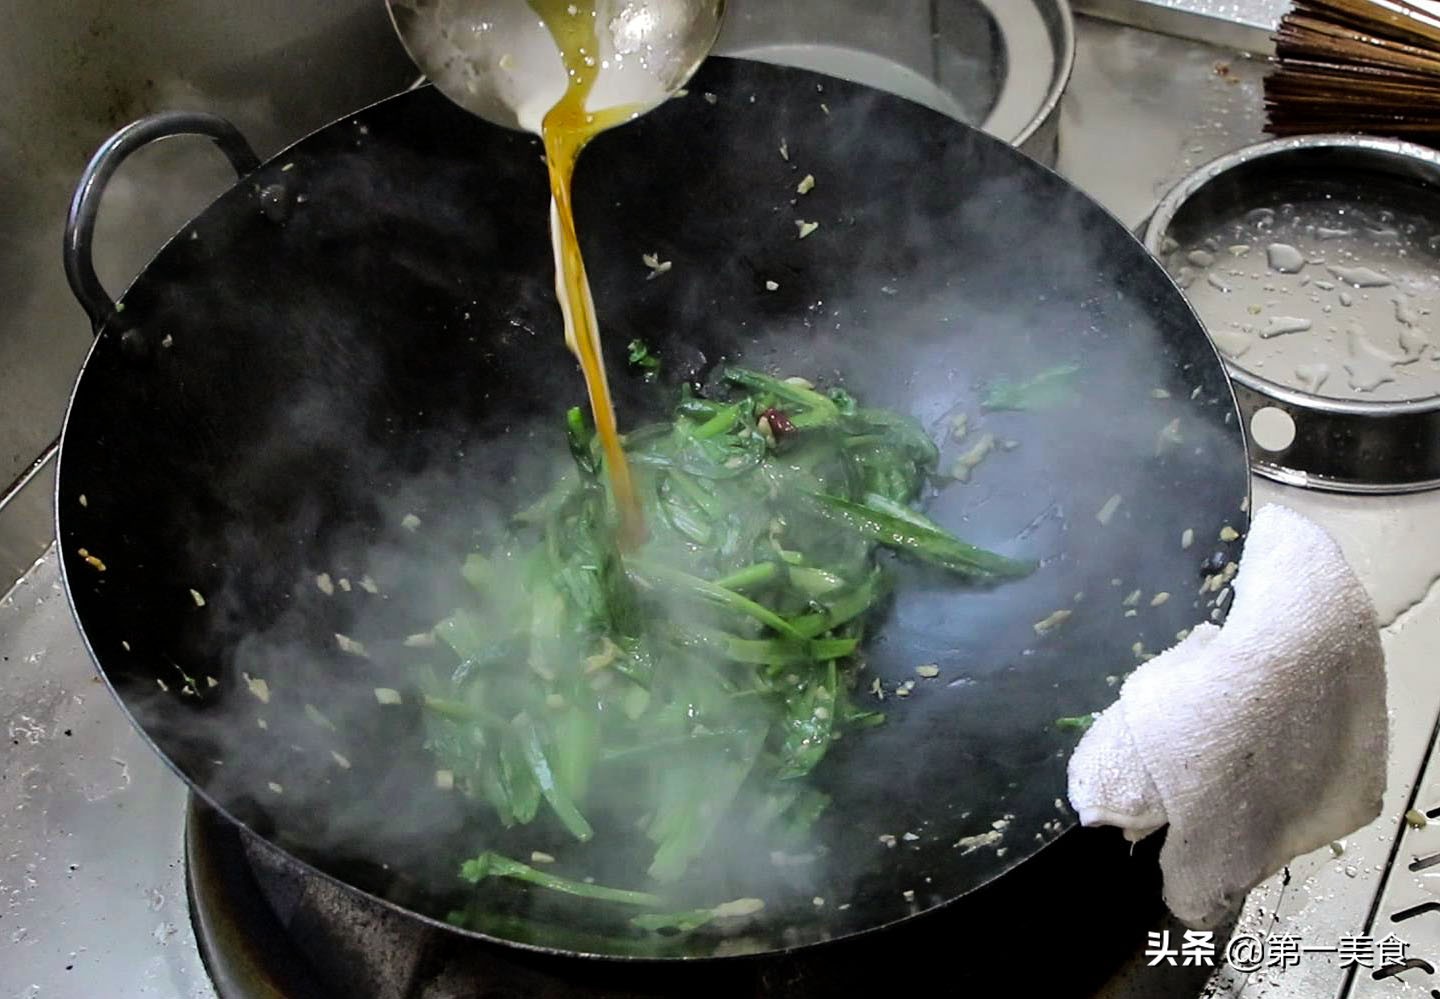 大厨分享一道蒜蓉油麦菜，蒜香四溢，色泽翠绿不变色